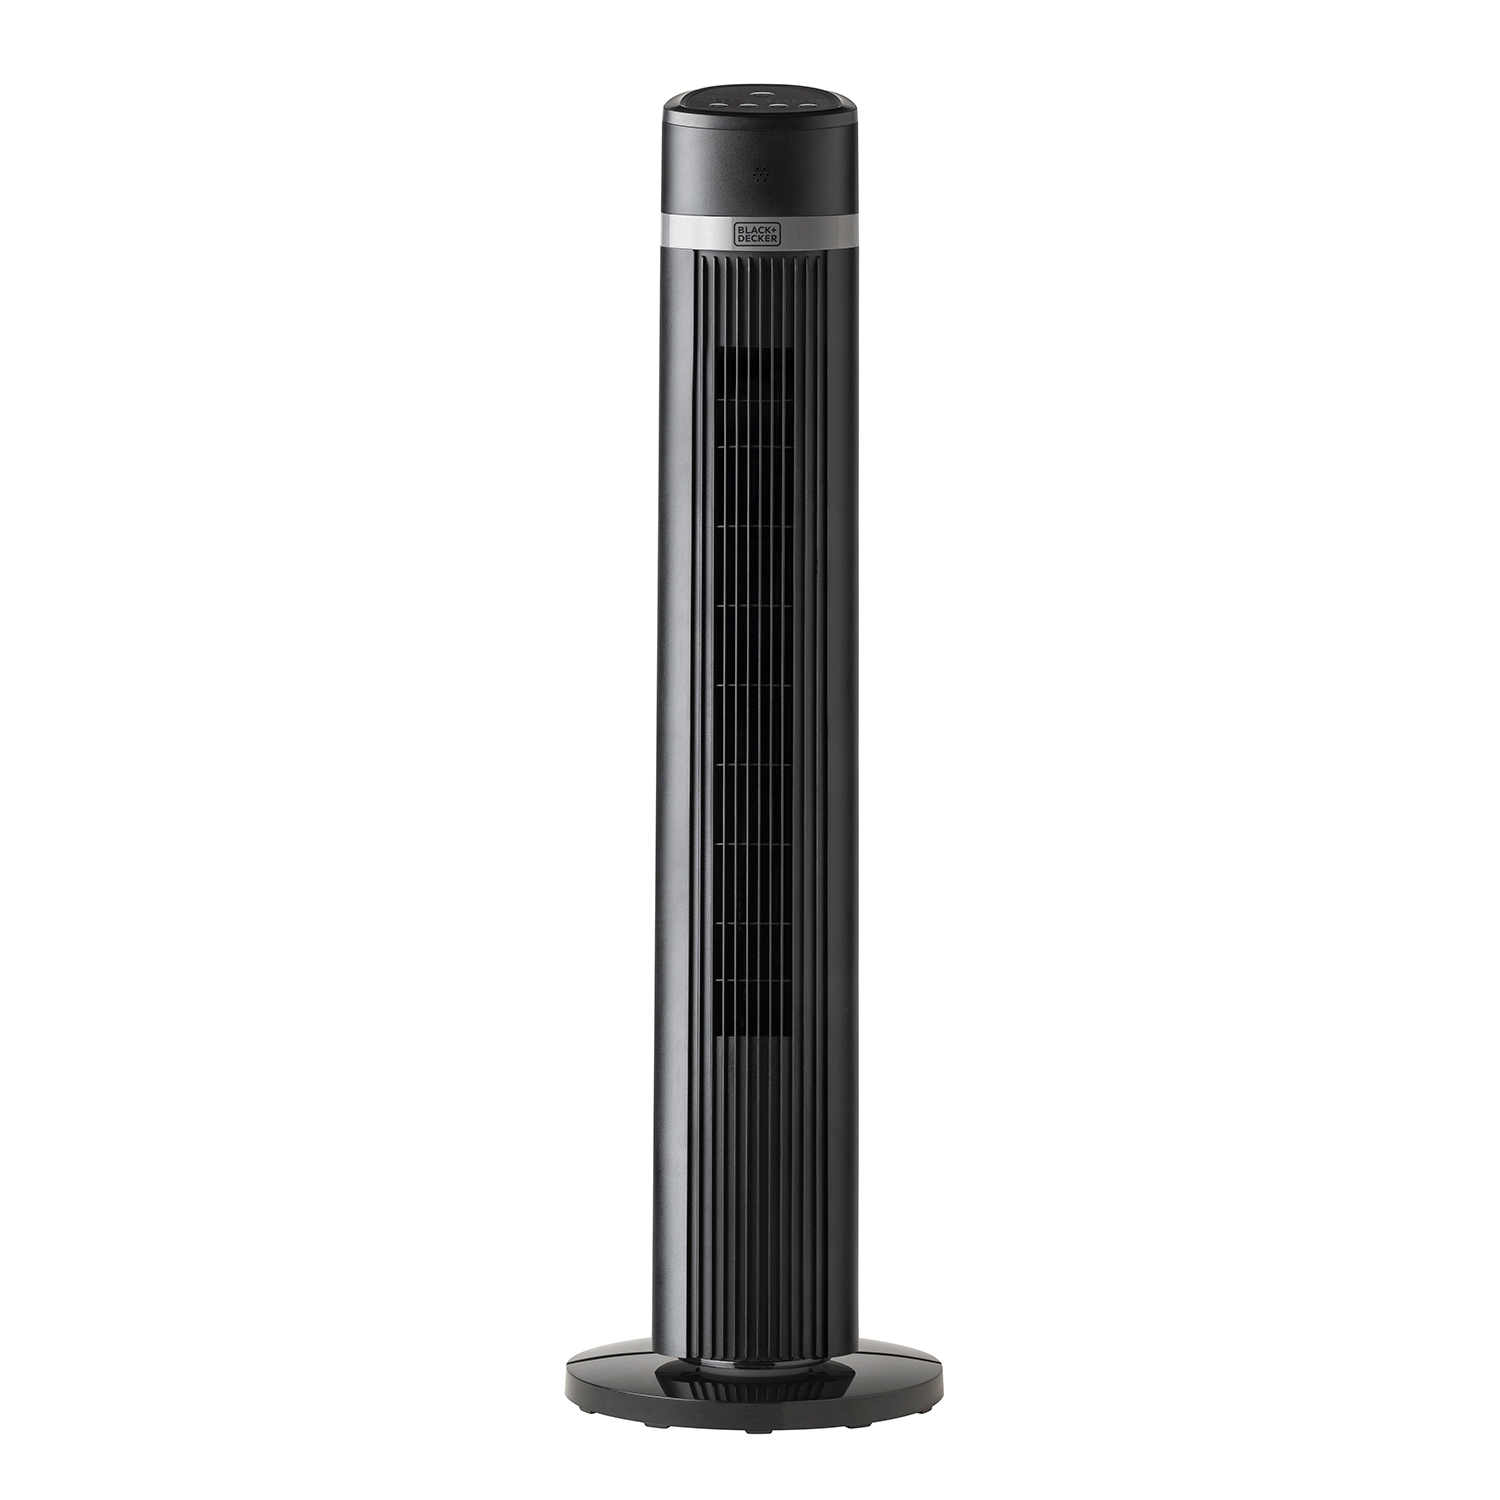 Black+decker Bxeft50e – ventilador torre 102 cm 45w 4 velocidades oscilante soft touch temporizador 15h control remoto 3 modos silencioso asa bxeft50